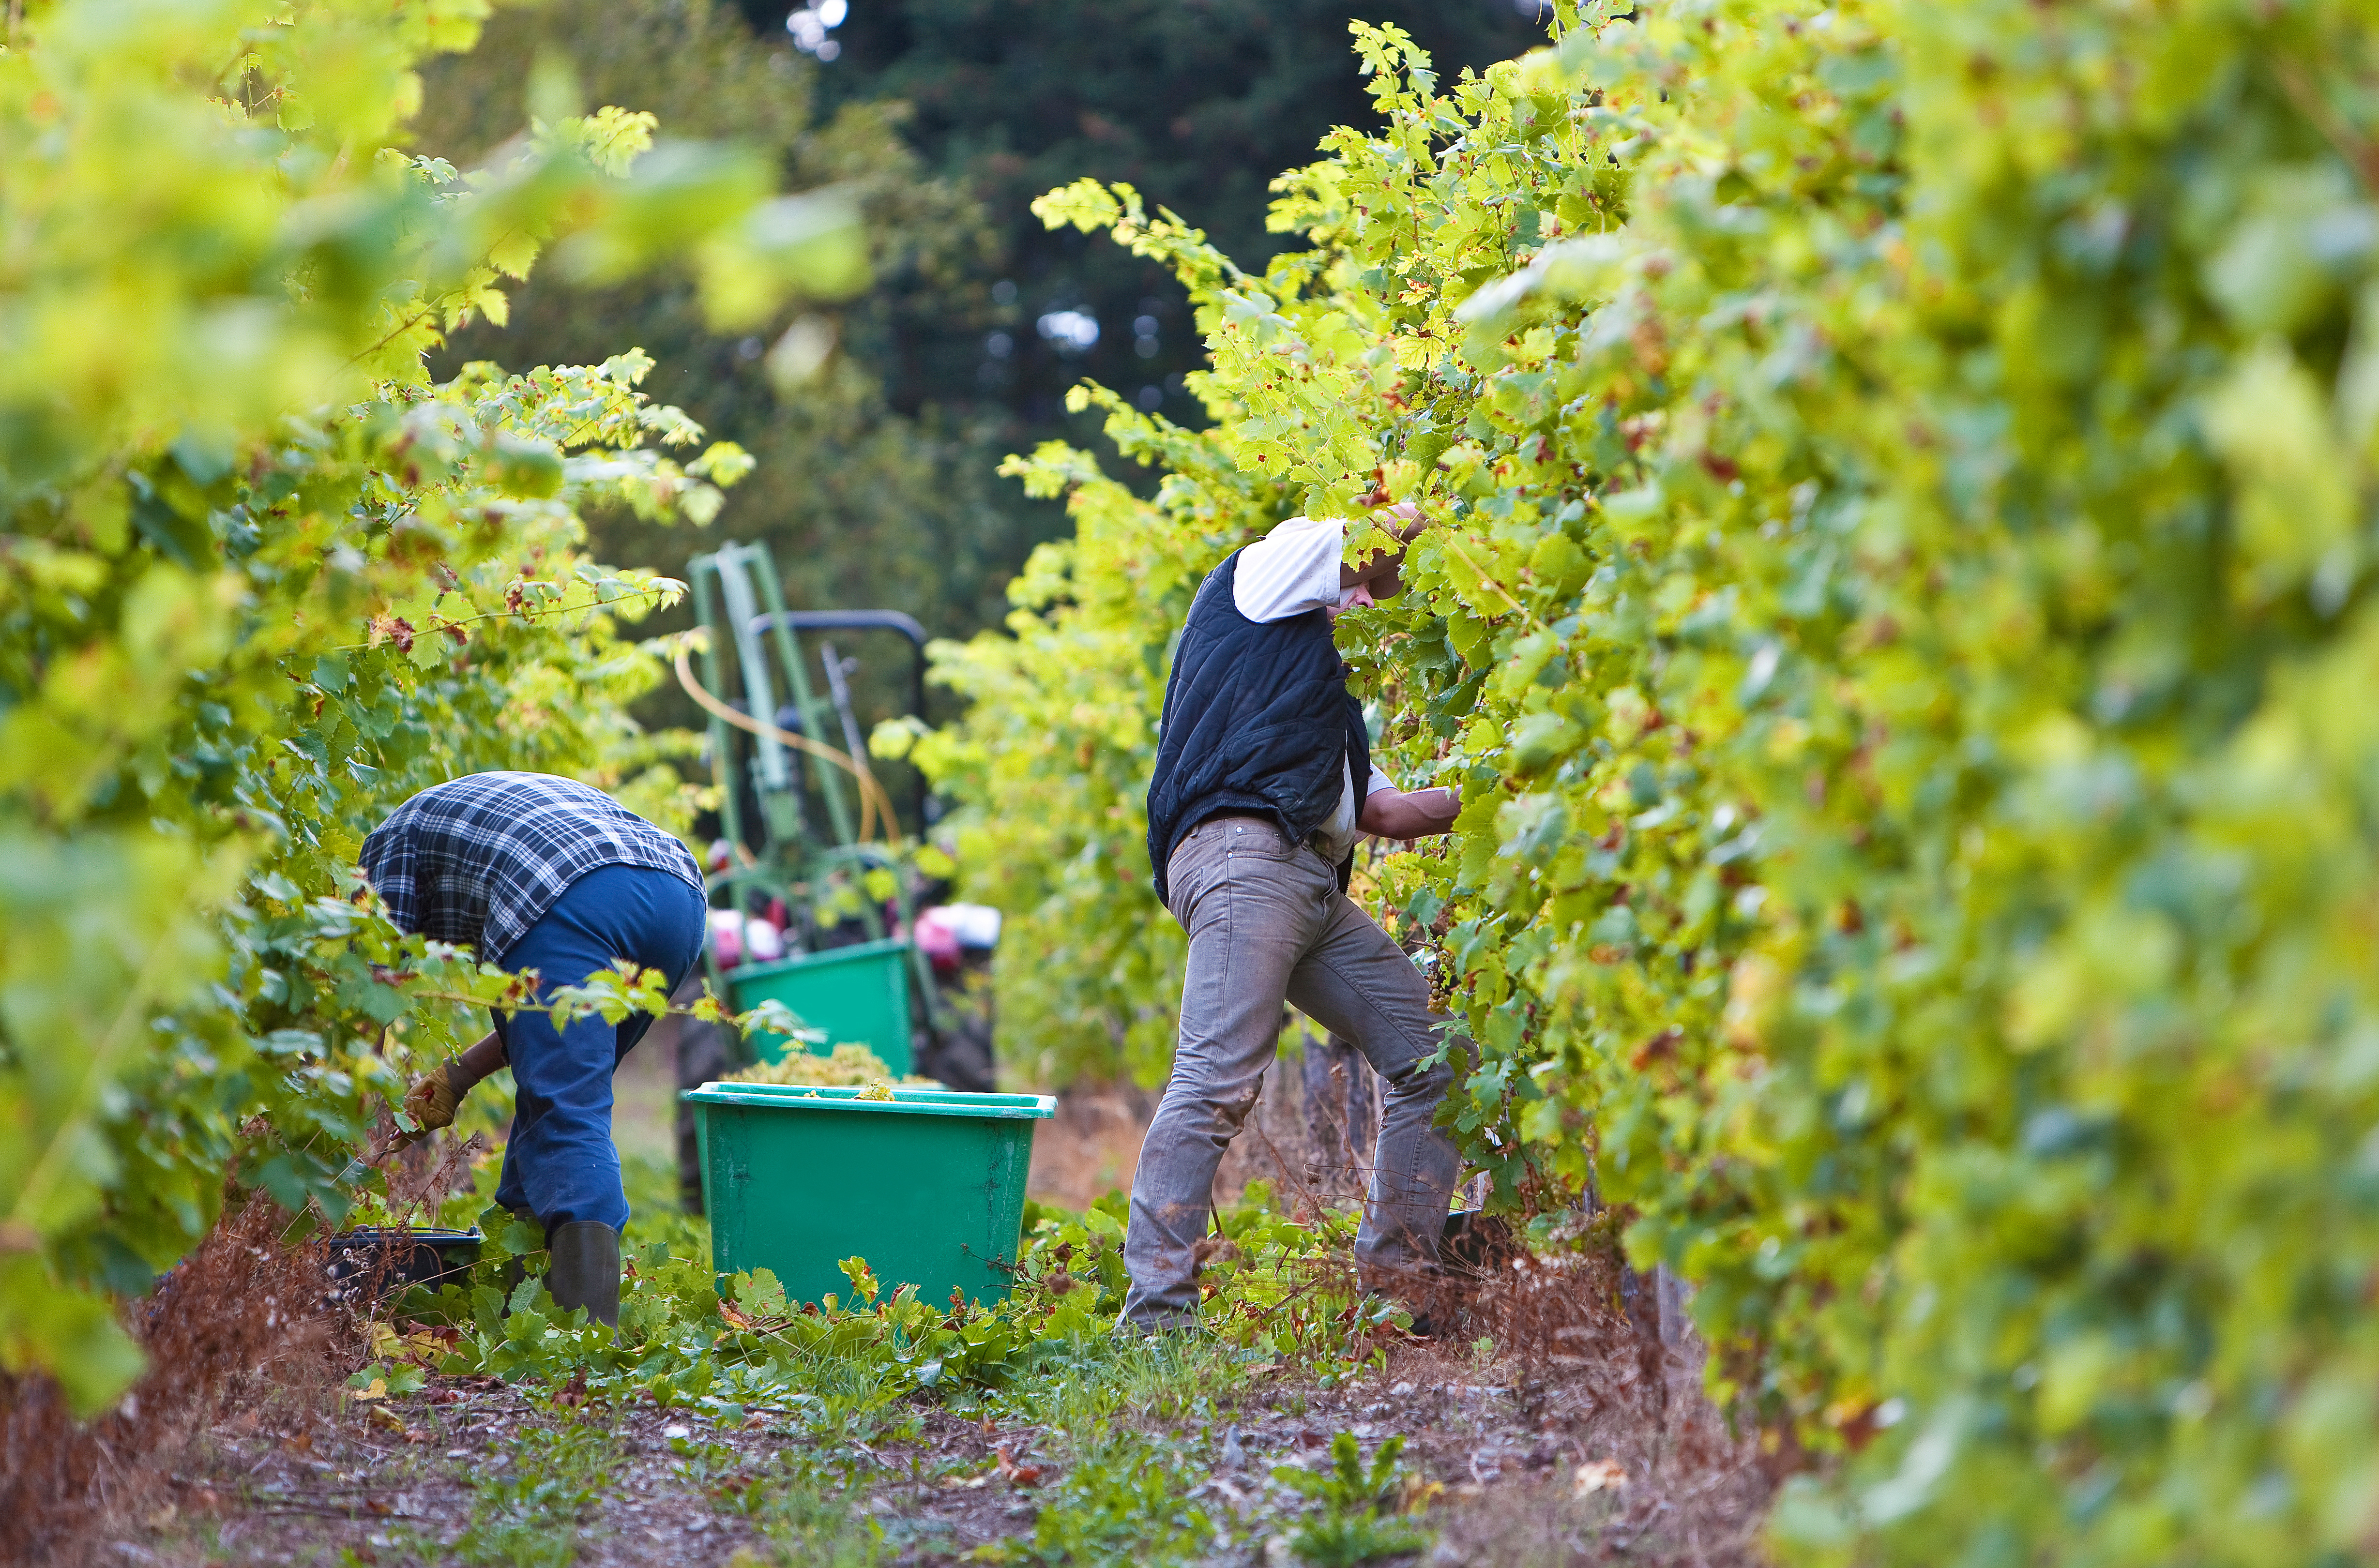 Two vineyard workers harvesting wine grapes